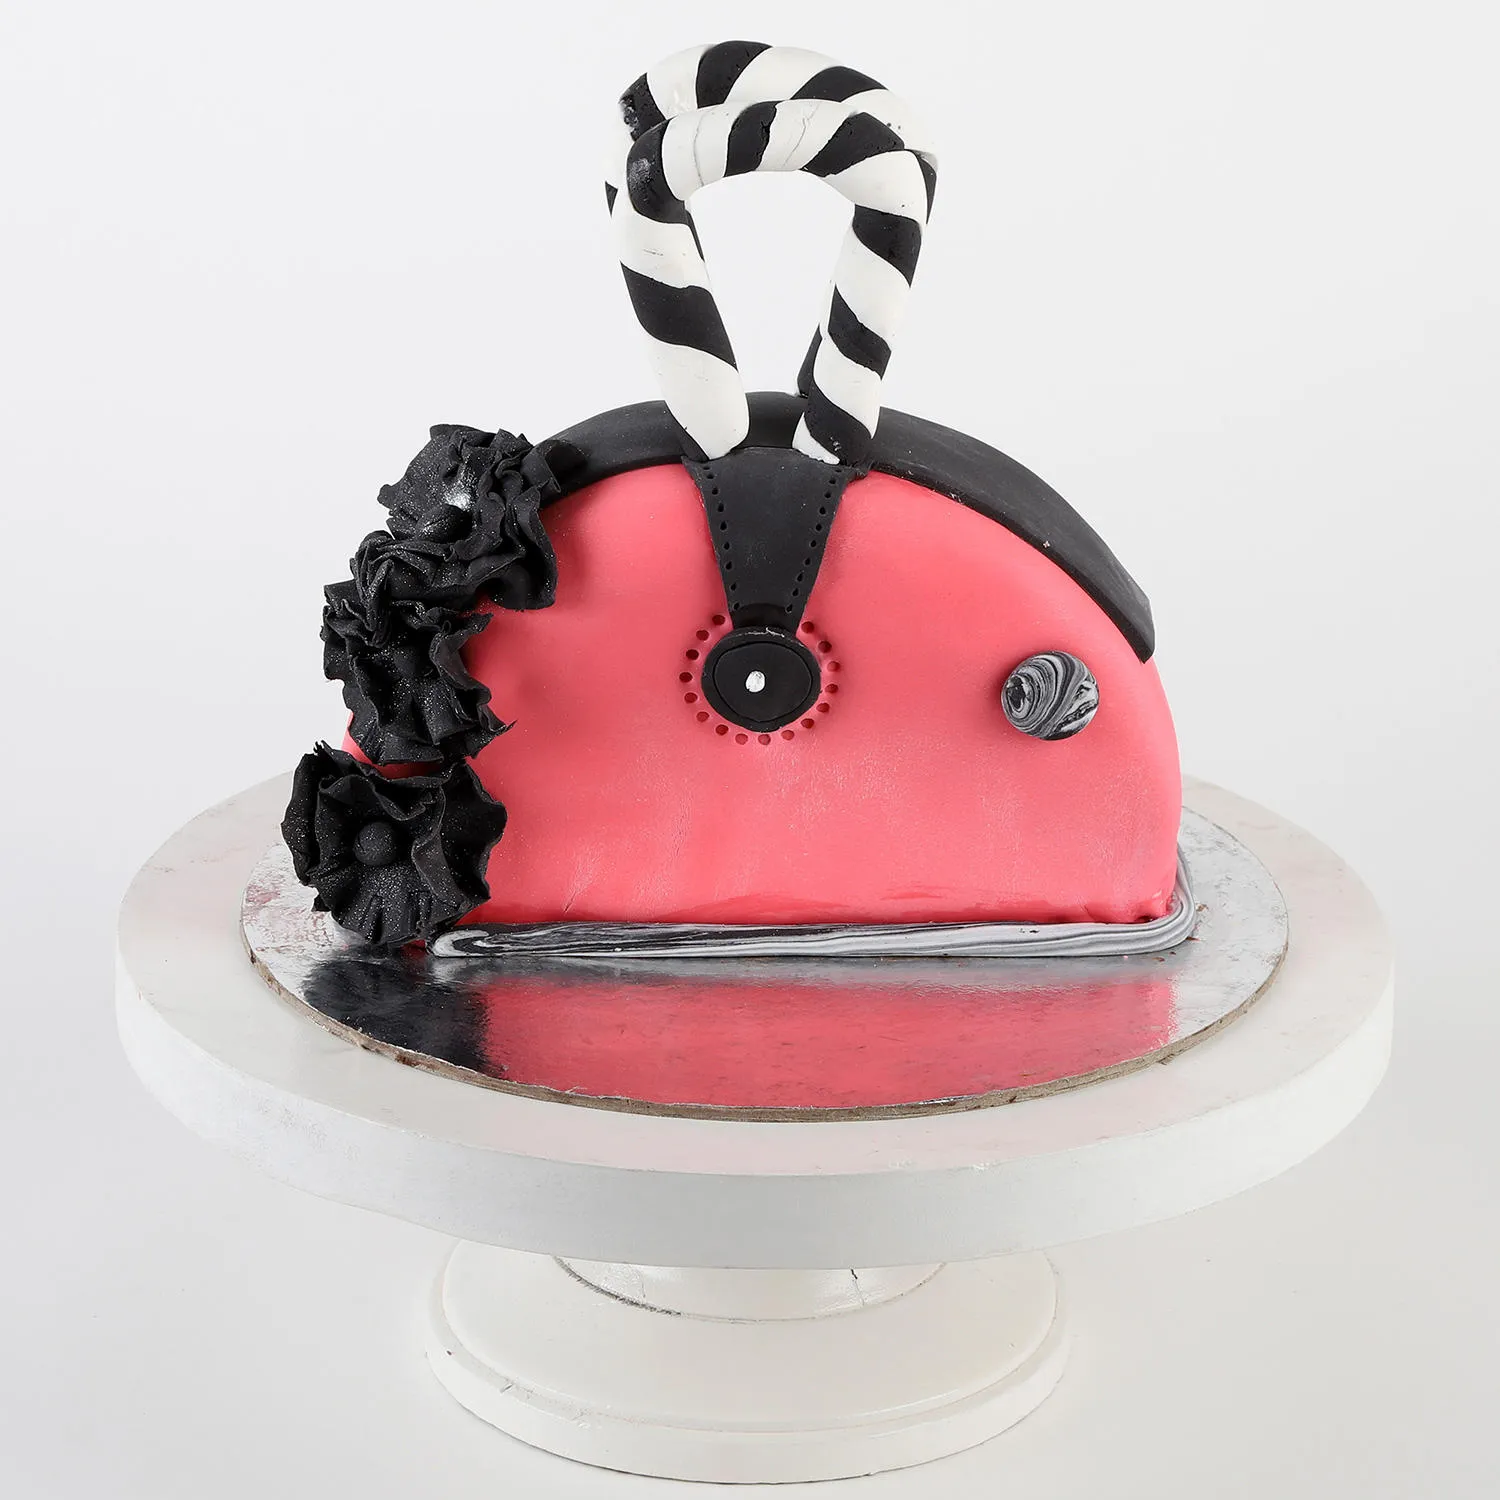 Michael Kors Purse Cake — Trefzger's Bakery